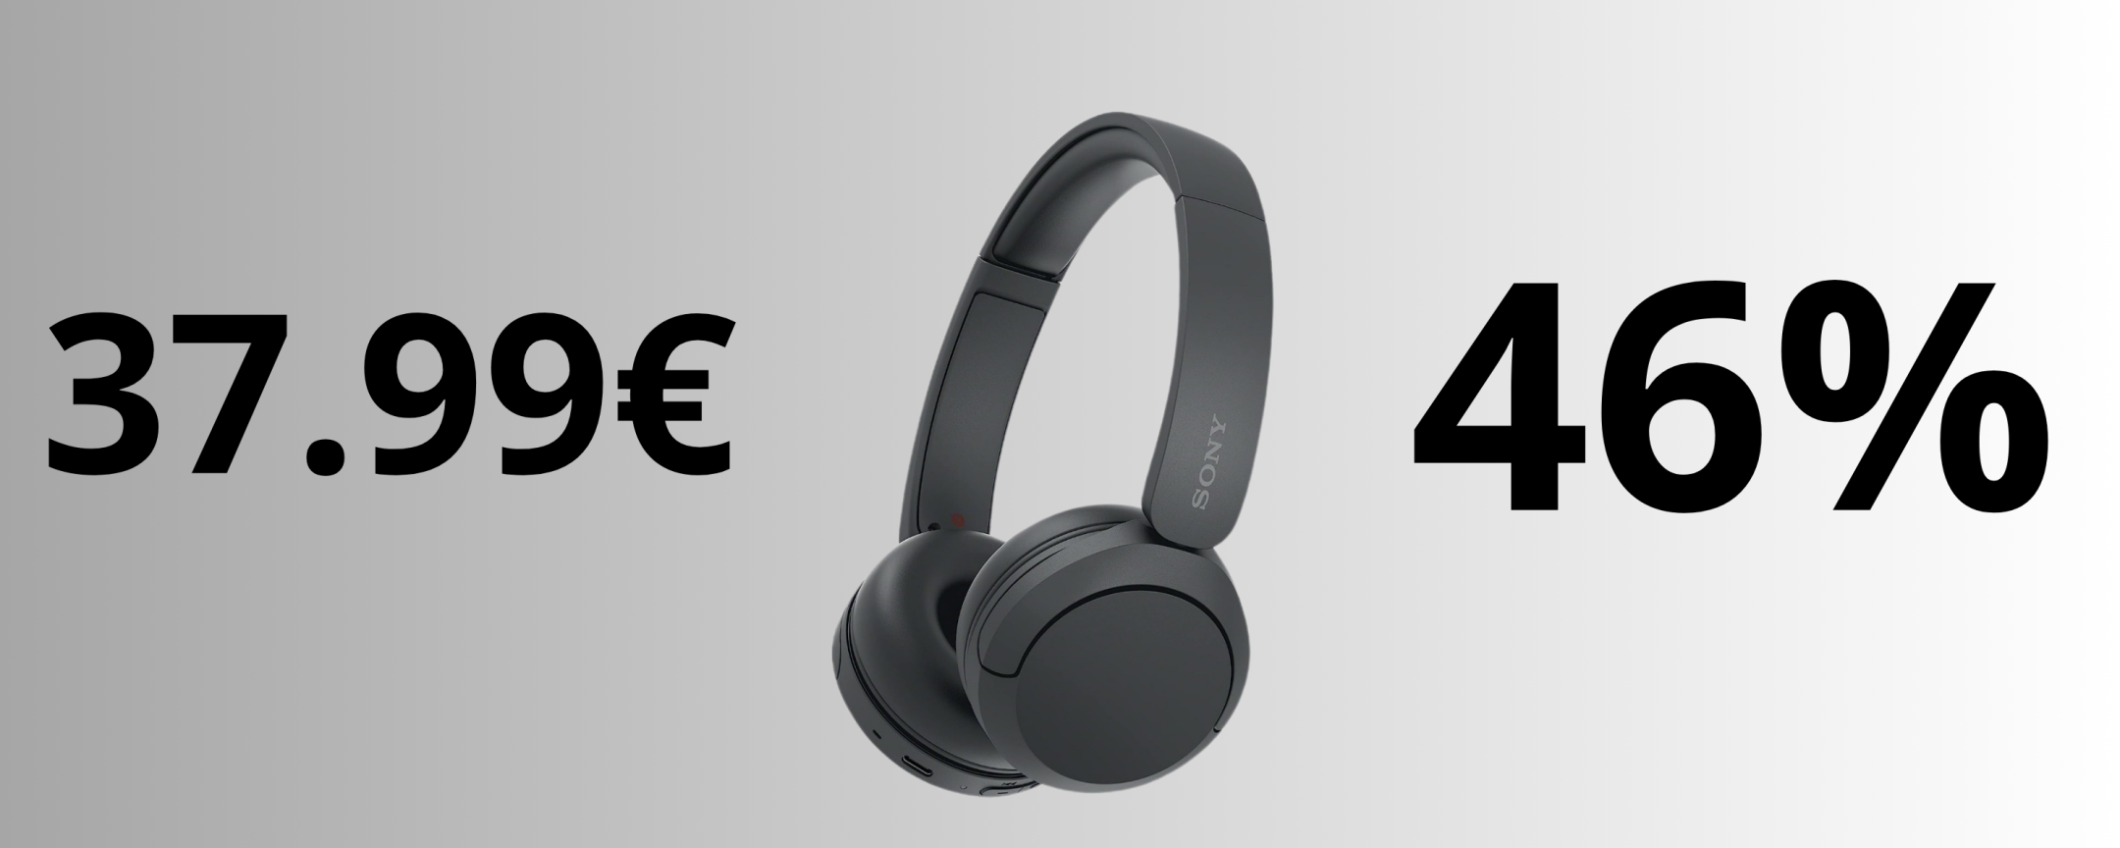 Sony WH-CH520, al SUPER prezzo di 37,99€ sono imbattibili